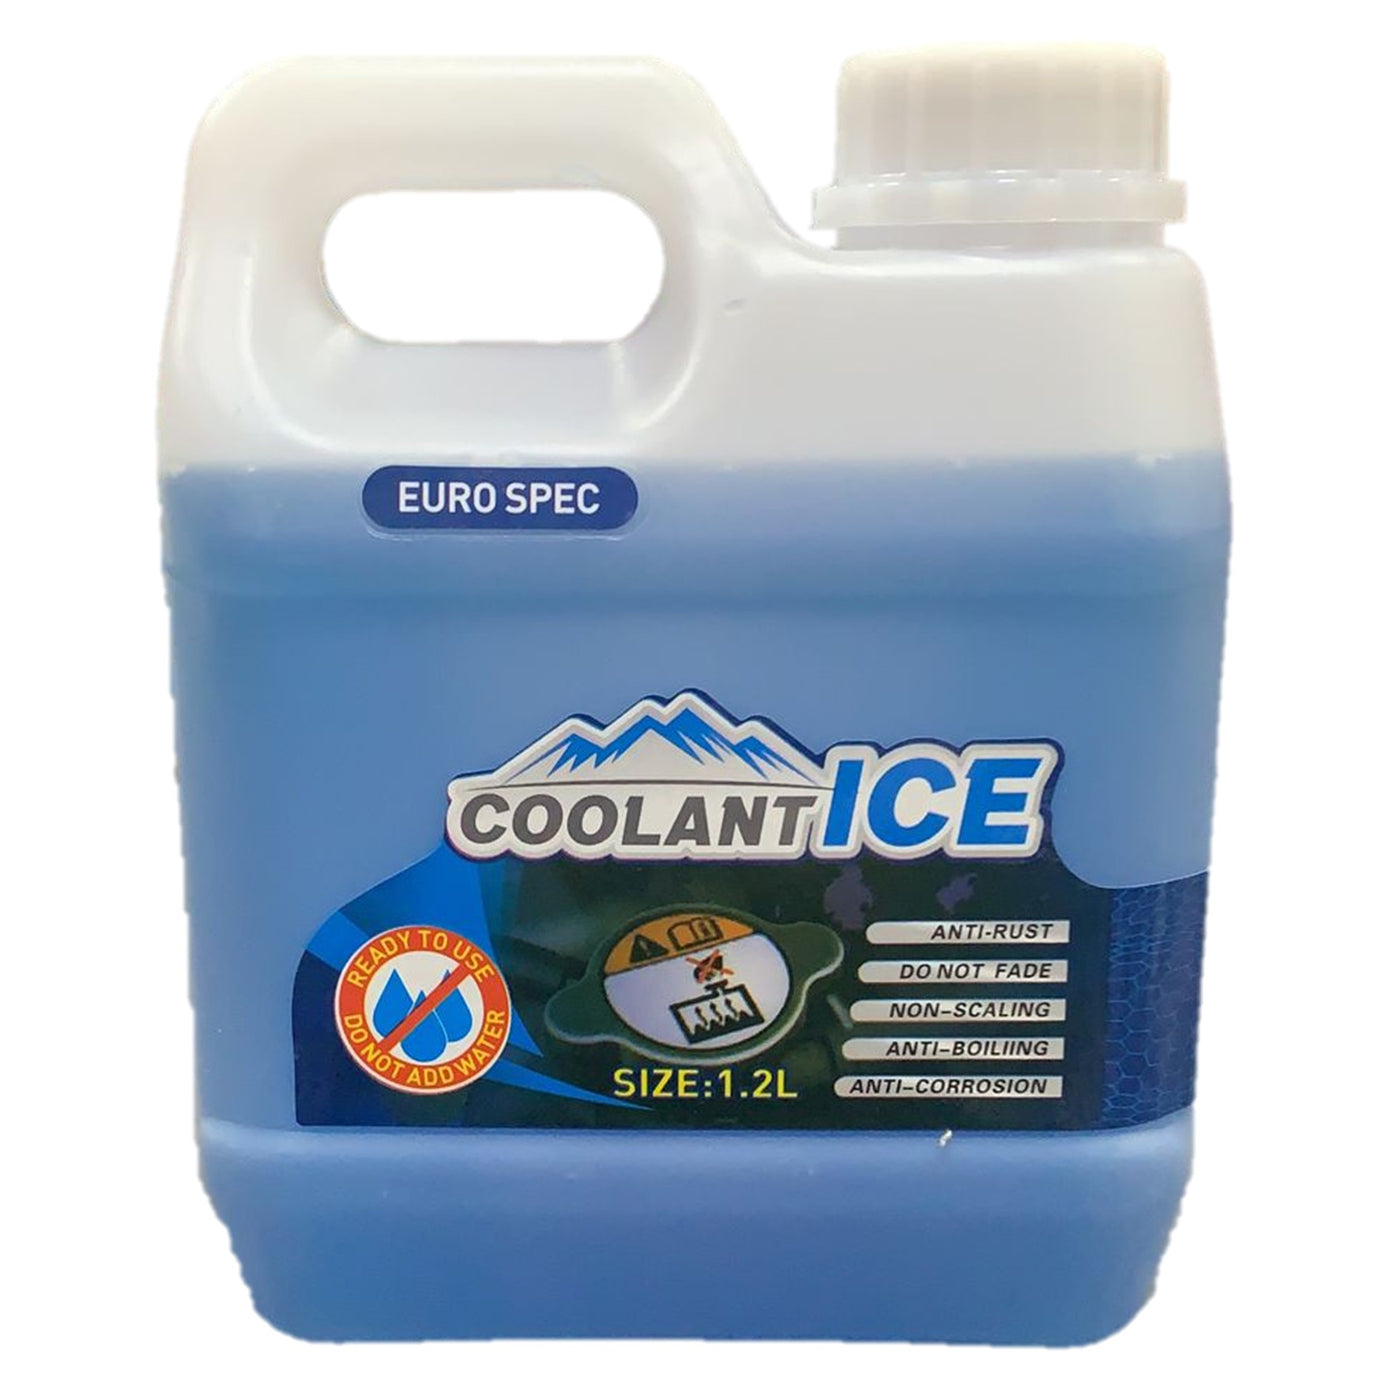 Coolant ICE 1.2L